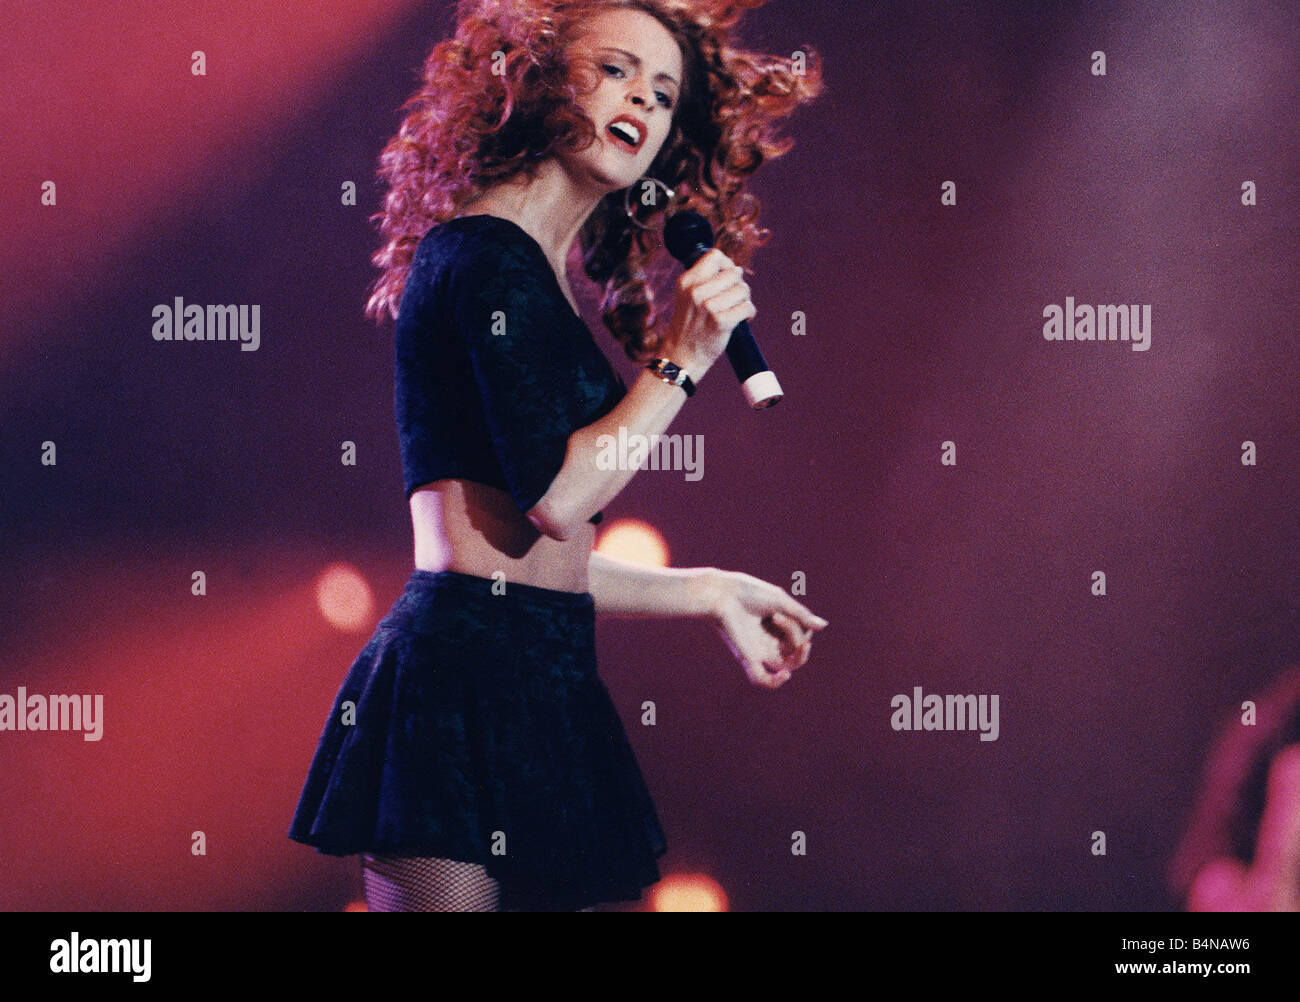 Sheena Easton singer musique pop sur scène Glasgow s grand jour les concerts vers 1985 Banque D'Images